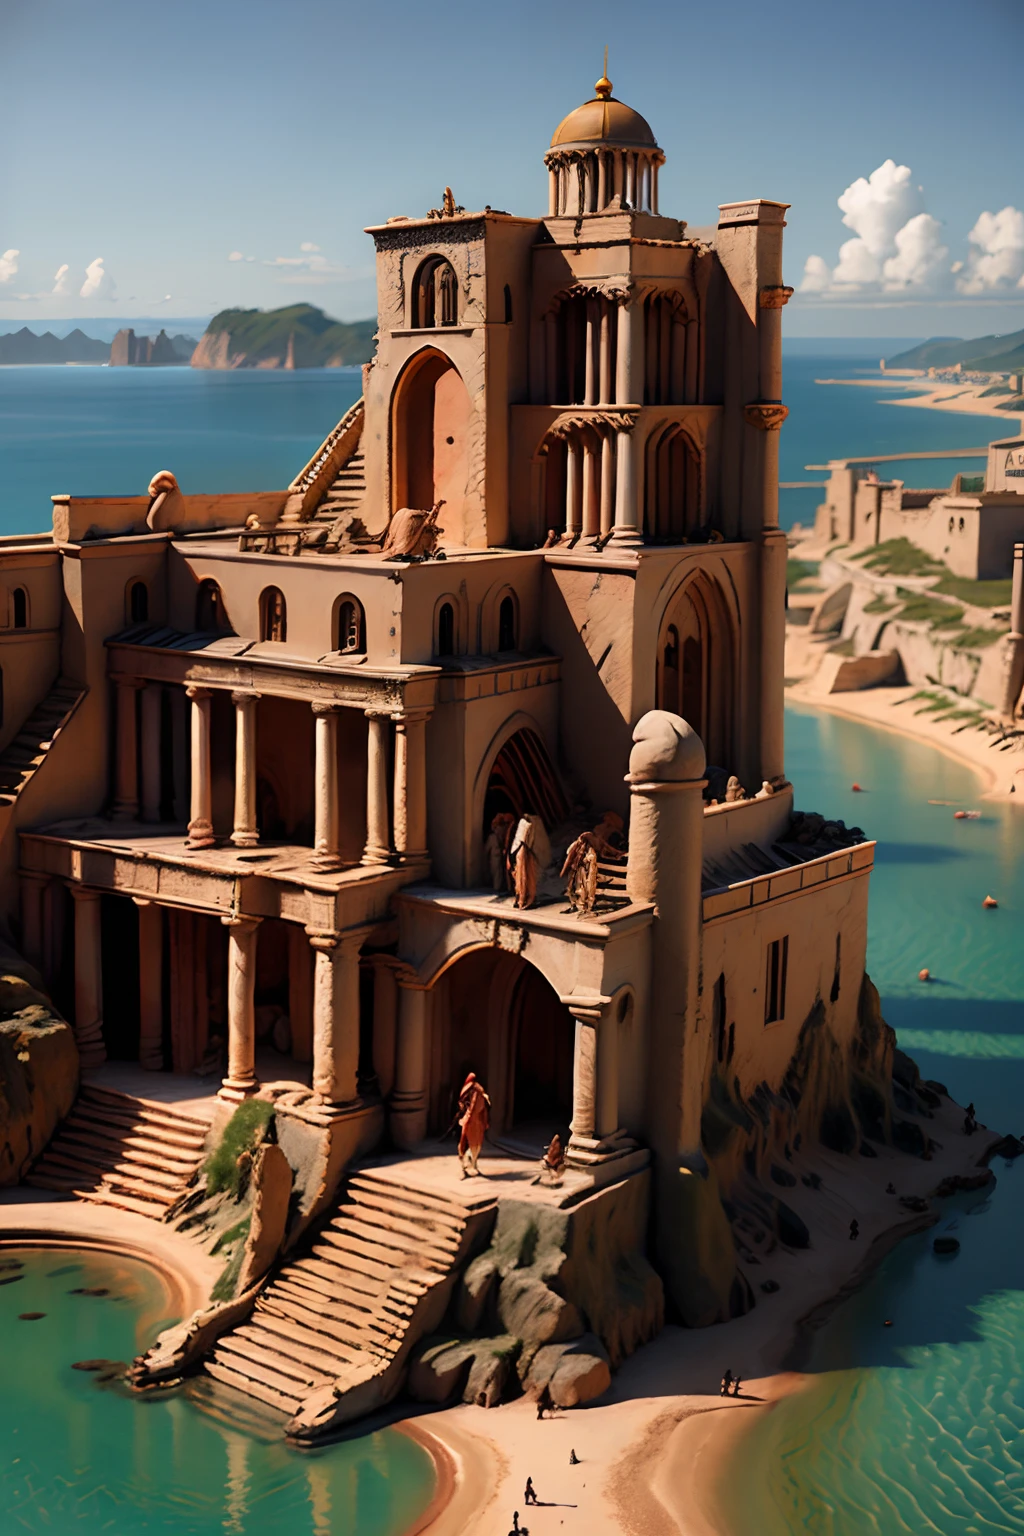 Atlantis hyper réaliste super détaillé angle plus large le style de SP4RT4